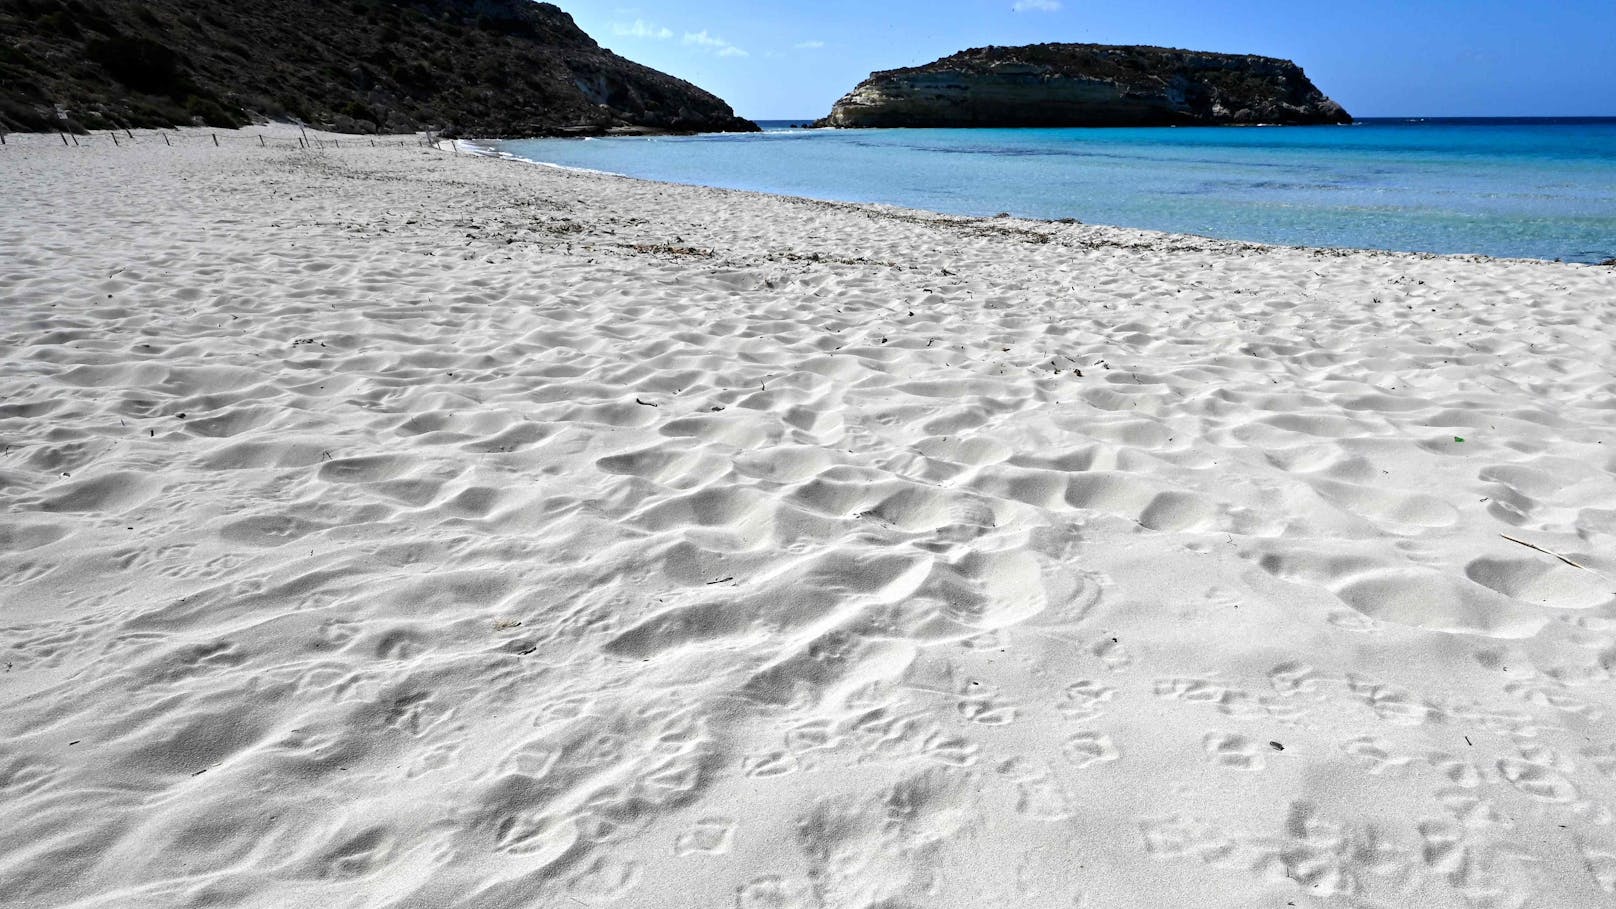 2. Spiaggia dei Conigli, Lampedusa, Italien